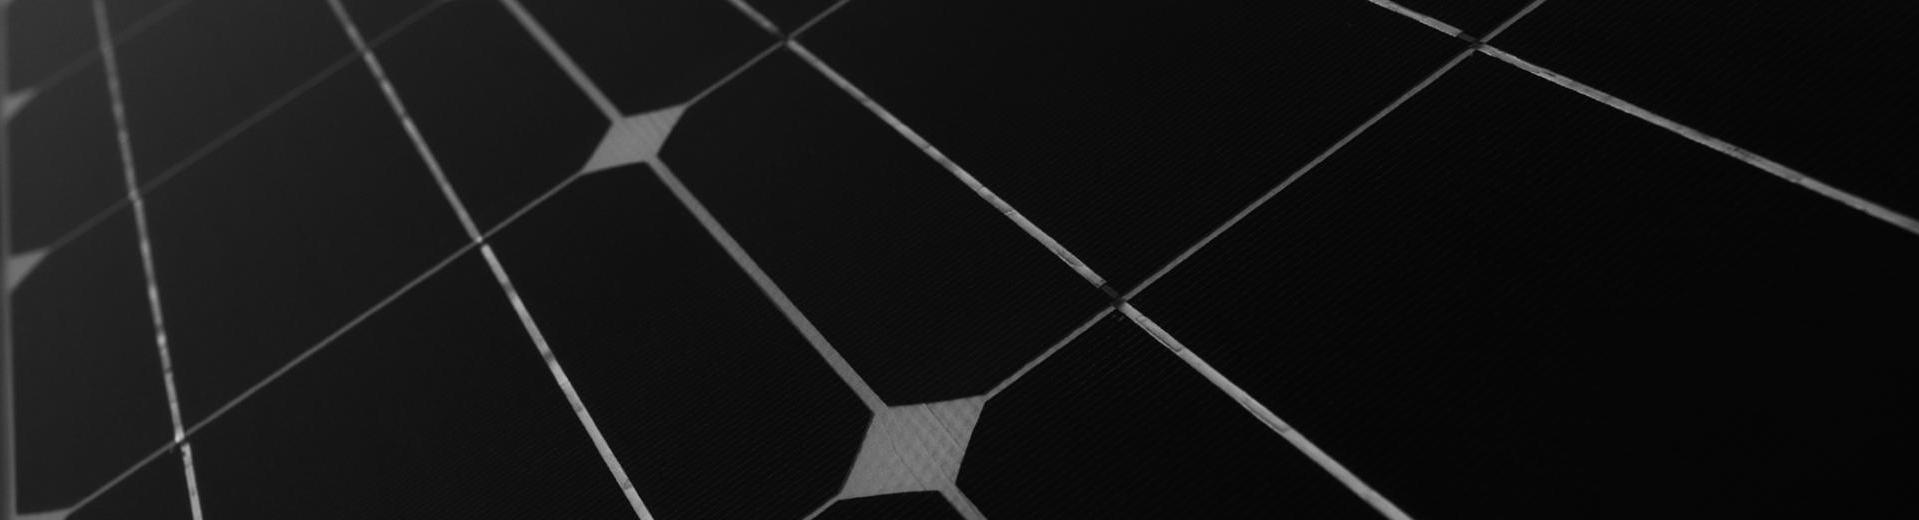 太阳能电池板黑白纹理